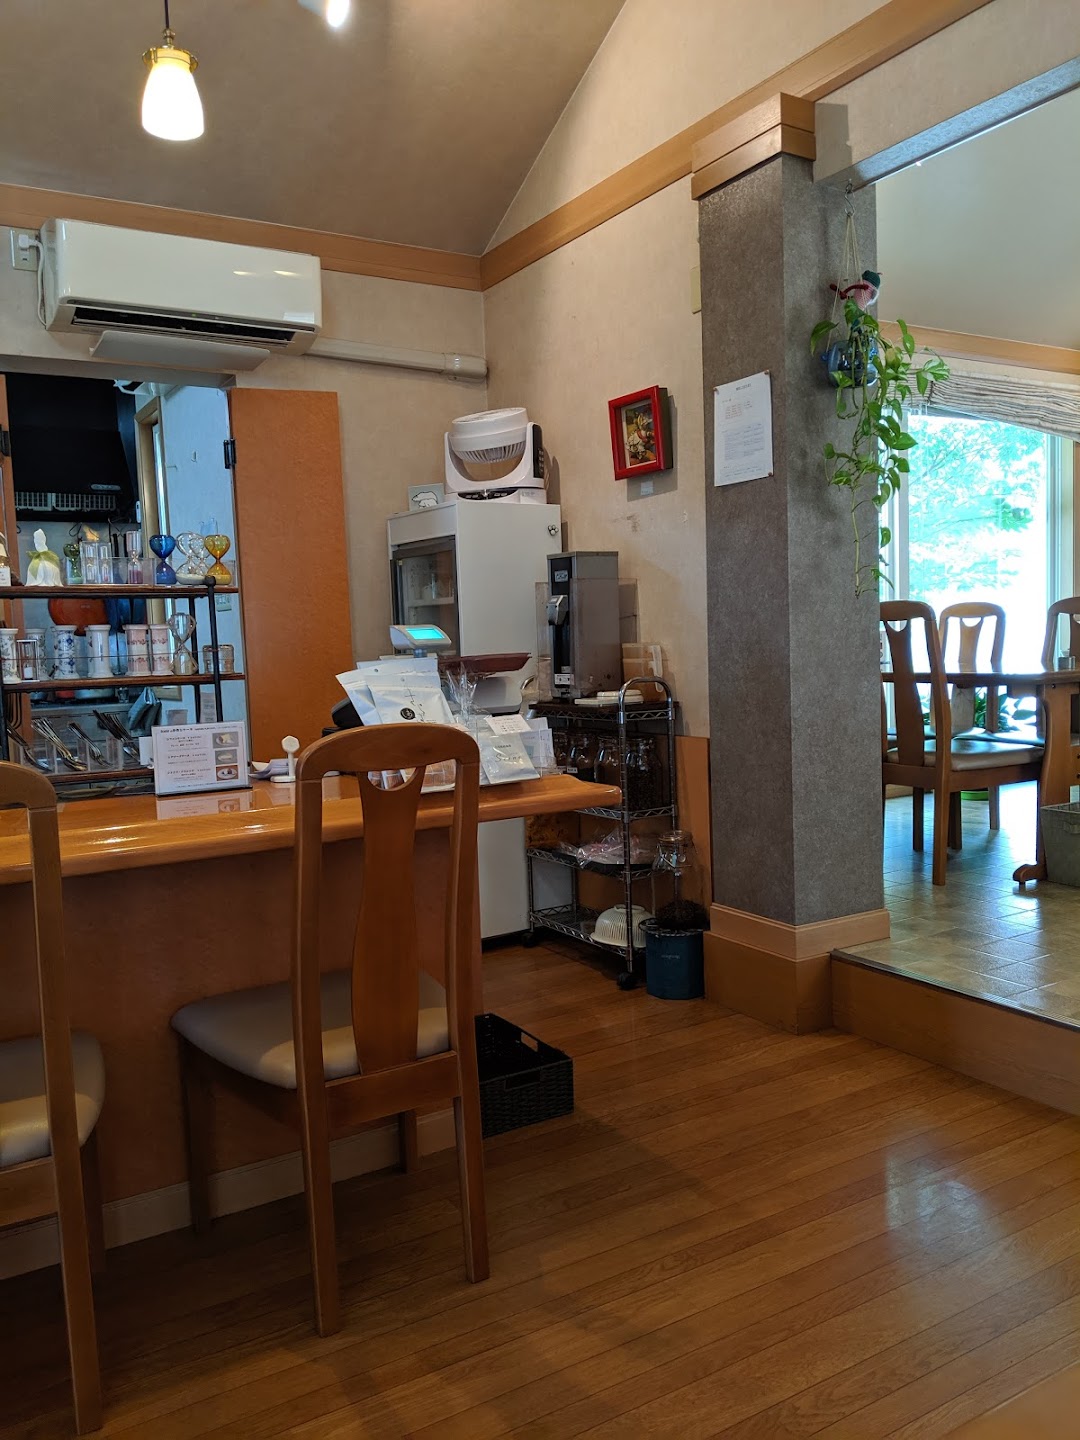 Cafe Scene